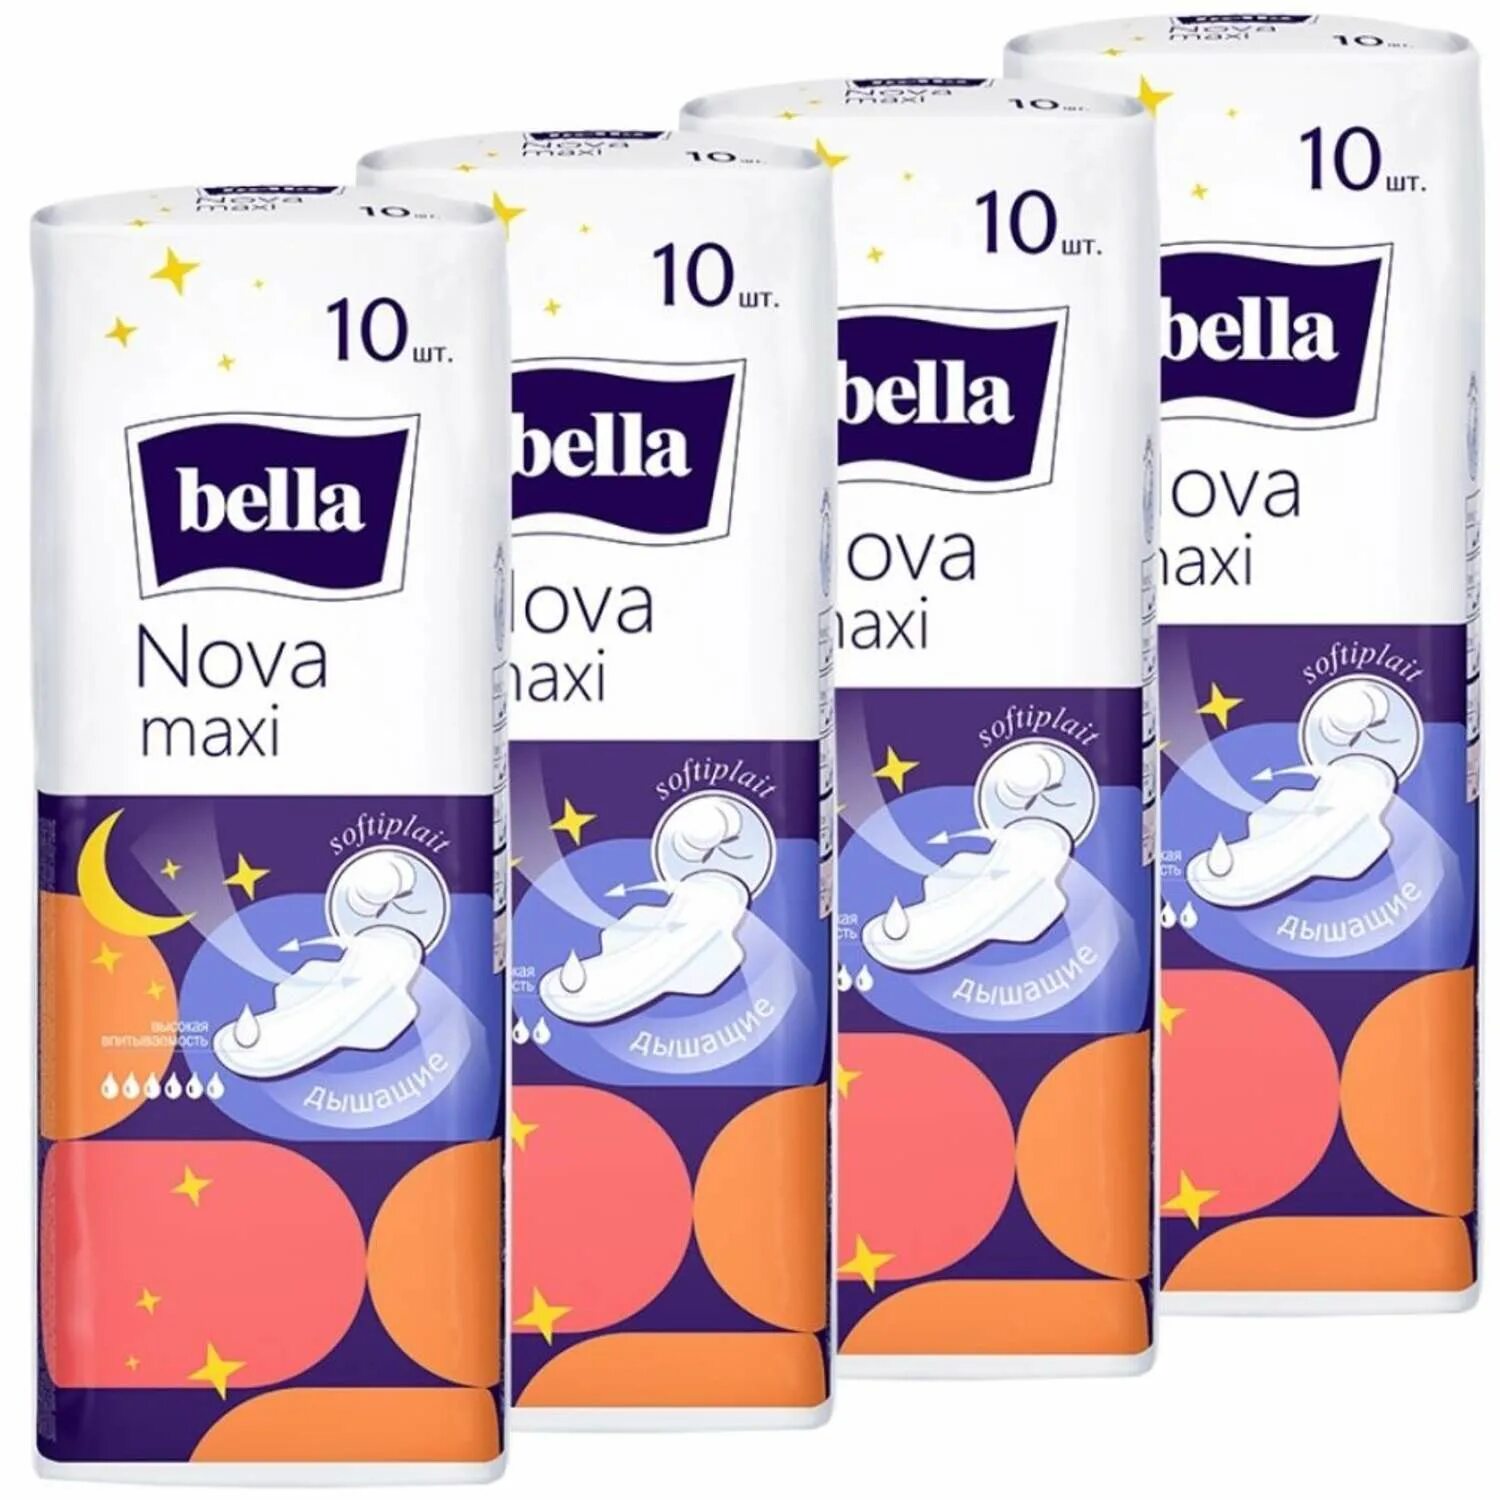 Bella nova maxi. Прокладки Bella Nova Maxi. Bella прокладки Nova Maxi 10шт. Прокладки Bella "Nova", 10 шт.